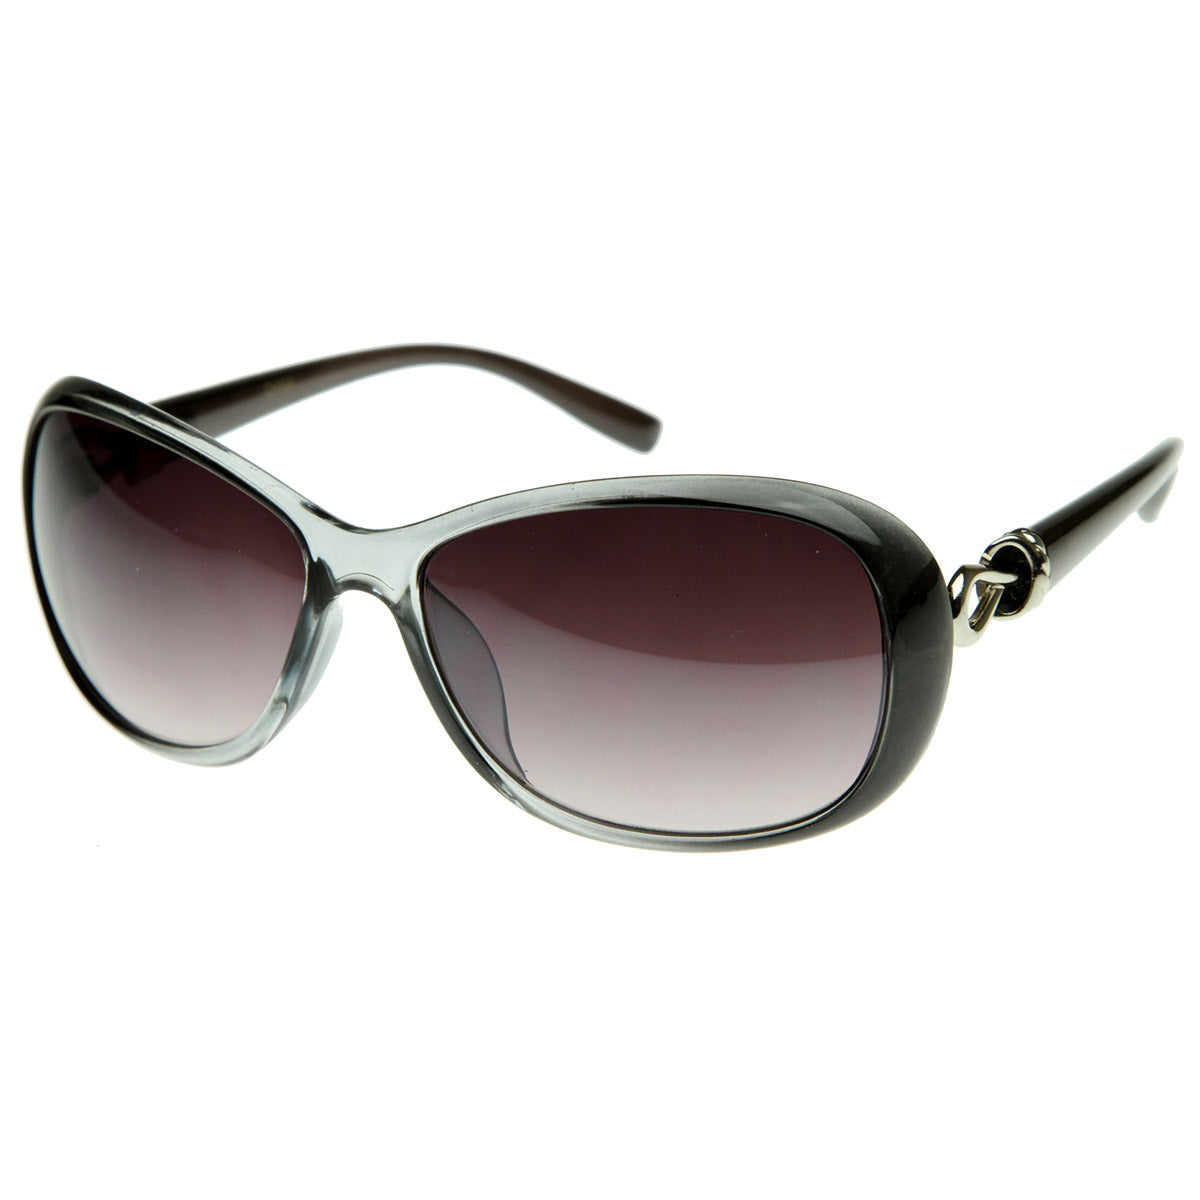 Designer Inspired High Quality Womens Oversized Oval Sunglasses - www.ermes-unice.fr